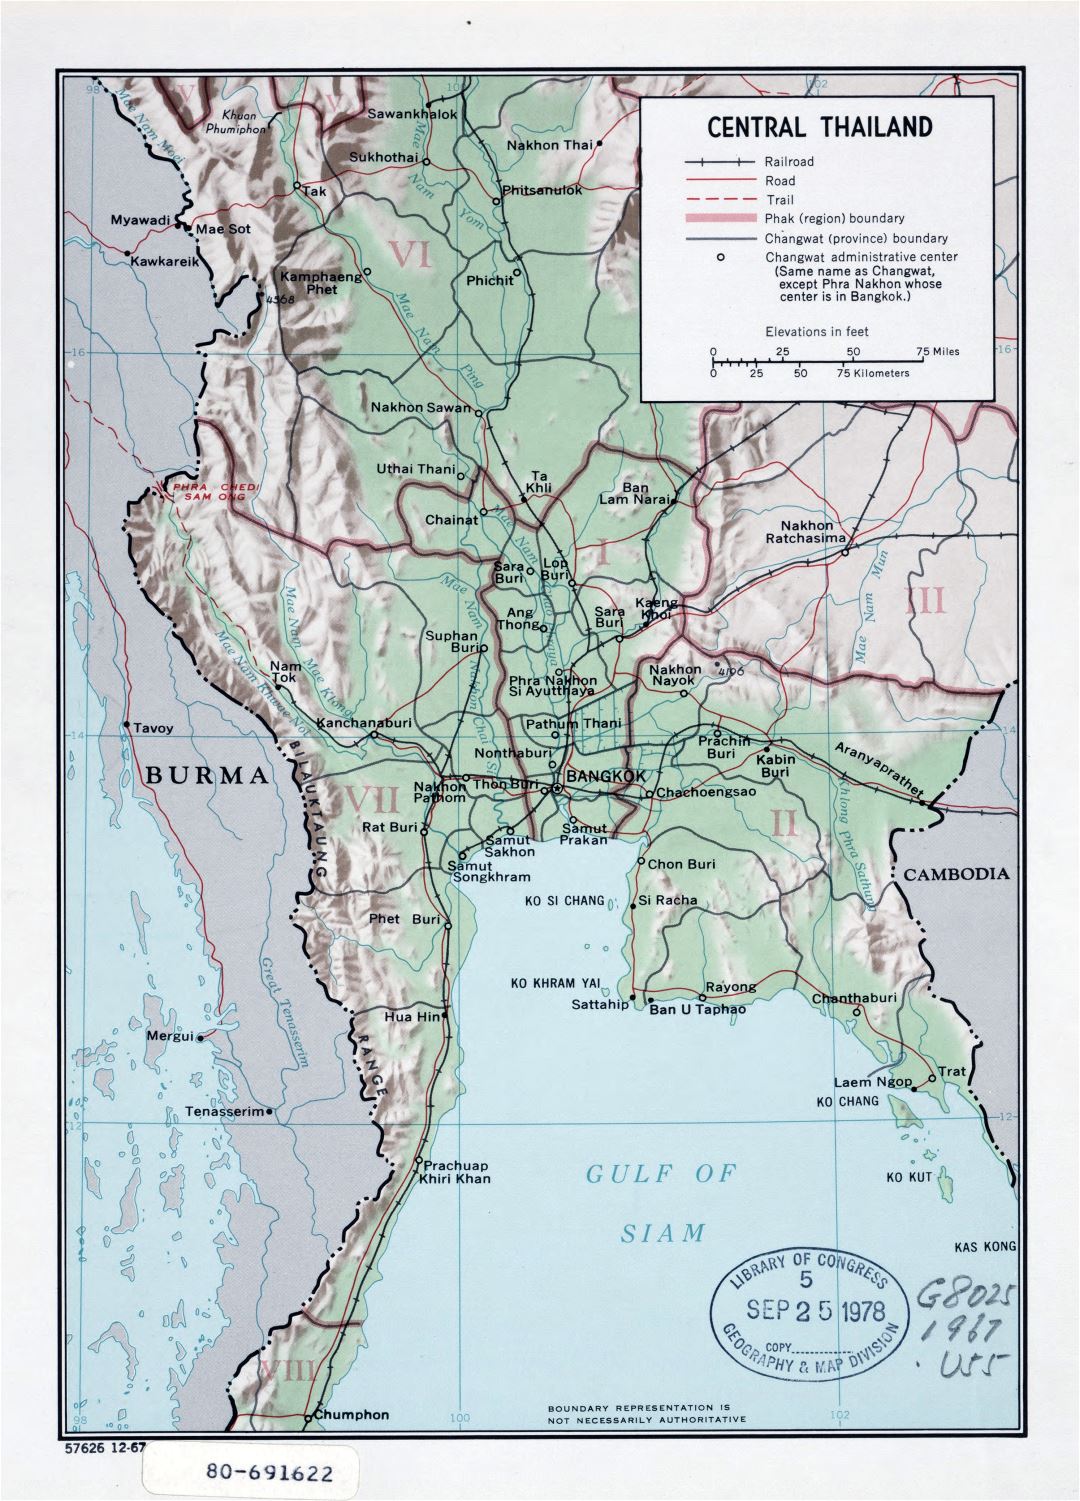 Grande detallado mapa político y administrativo del centro de Tailandia con relieve, carreteras, ferrocarriles y principales ciudades - 1967